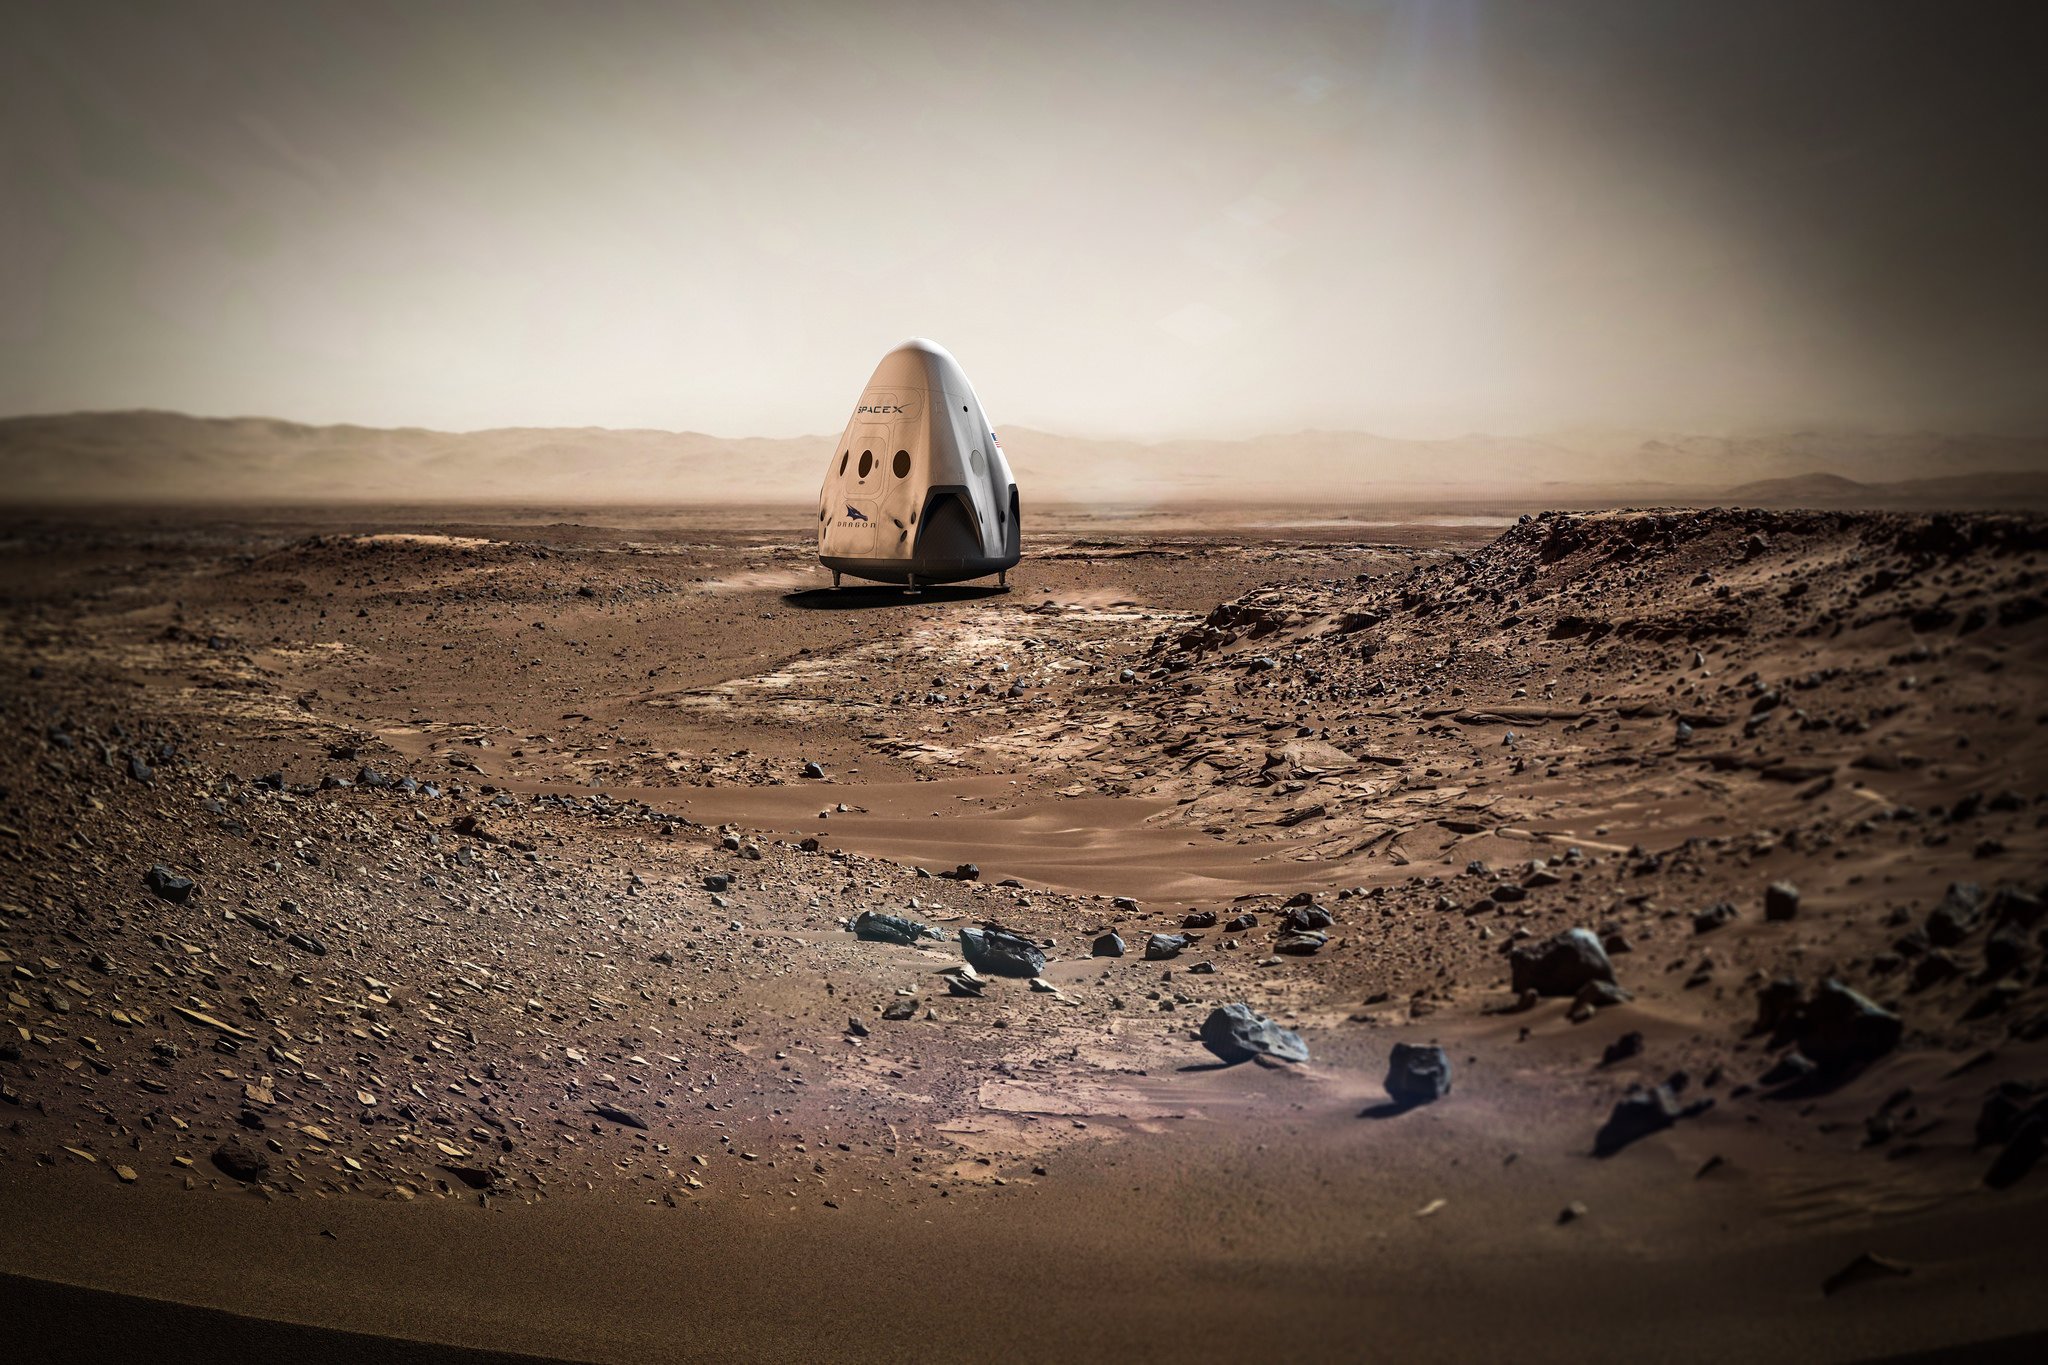 Dragon-Kapsel auf dem Mars: 2018 soll die erste Kapsel zum roten Planeten fliegen, anschließend alle 26 Monate eine weitere. Ziel: die Besiedlung des Mars.